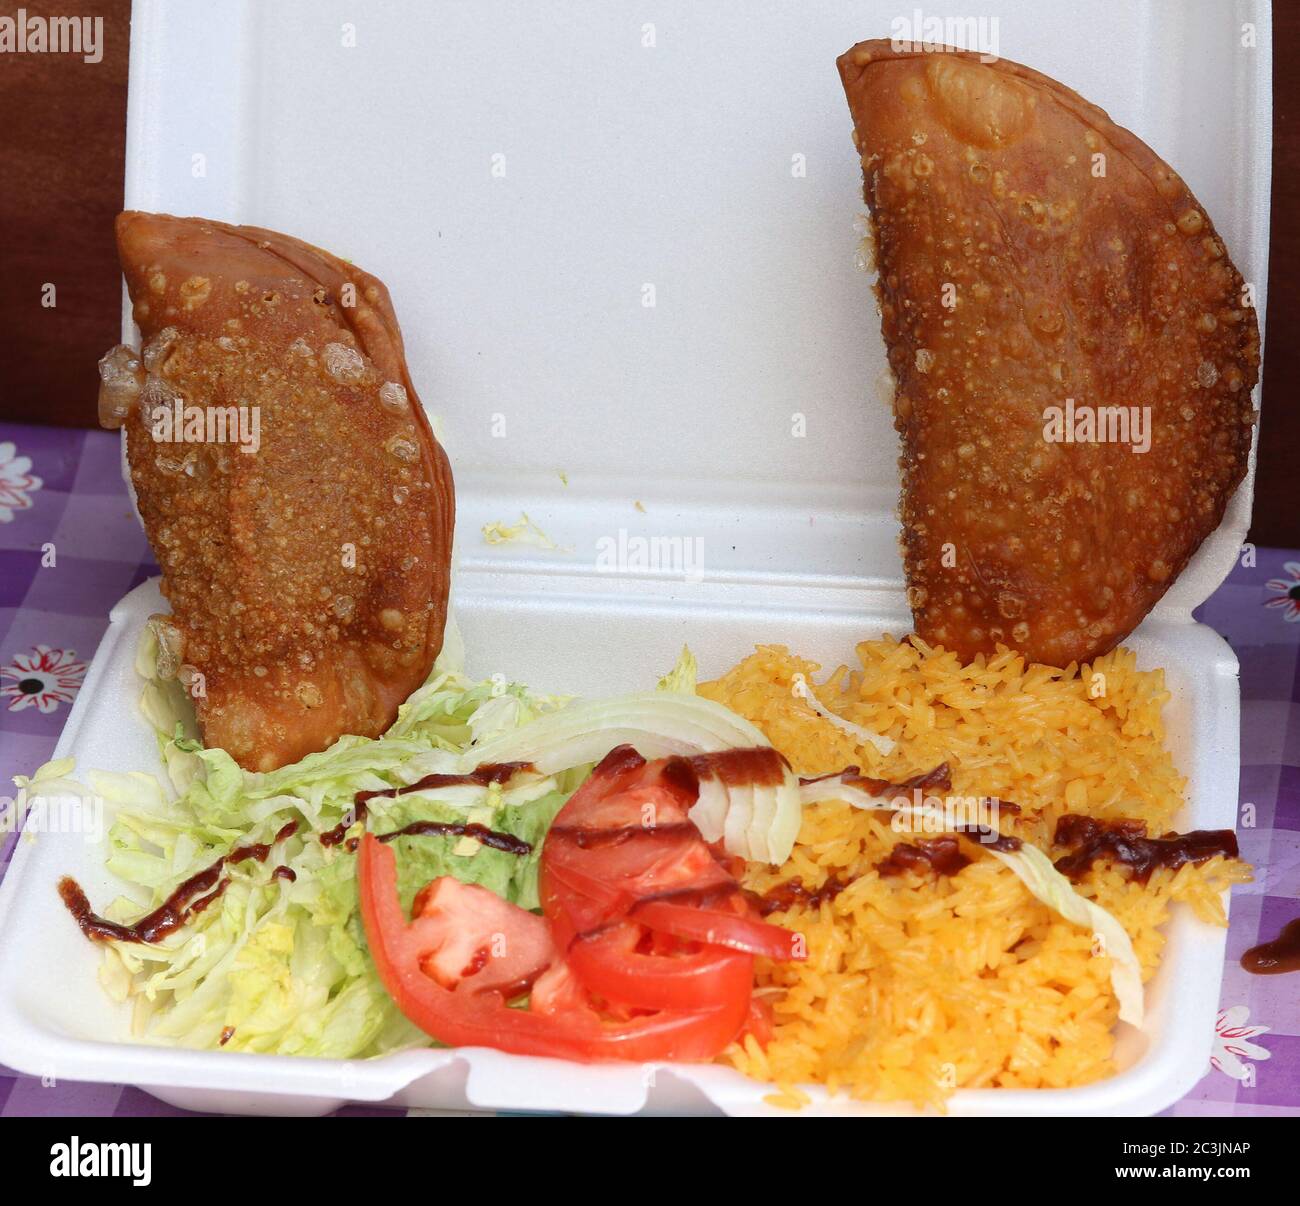 Käse und Fleisch Empanadas mit Salat, Tomaten, gelbem Reis und Sauce auf Styropor Lebensmittelbehälter Stockfoto